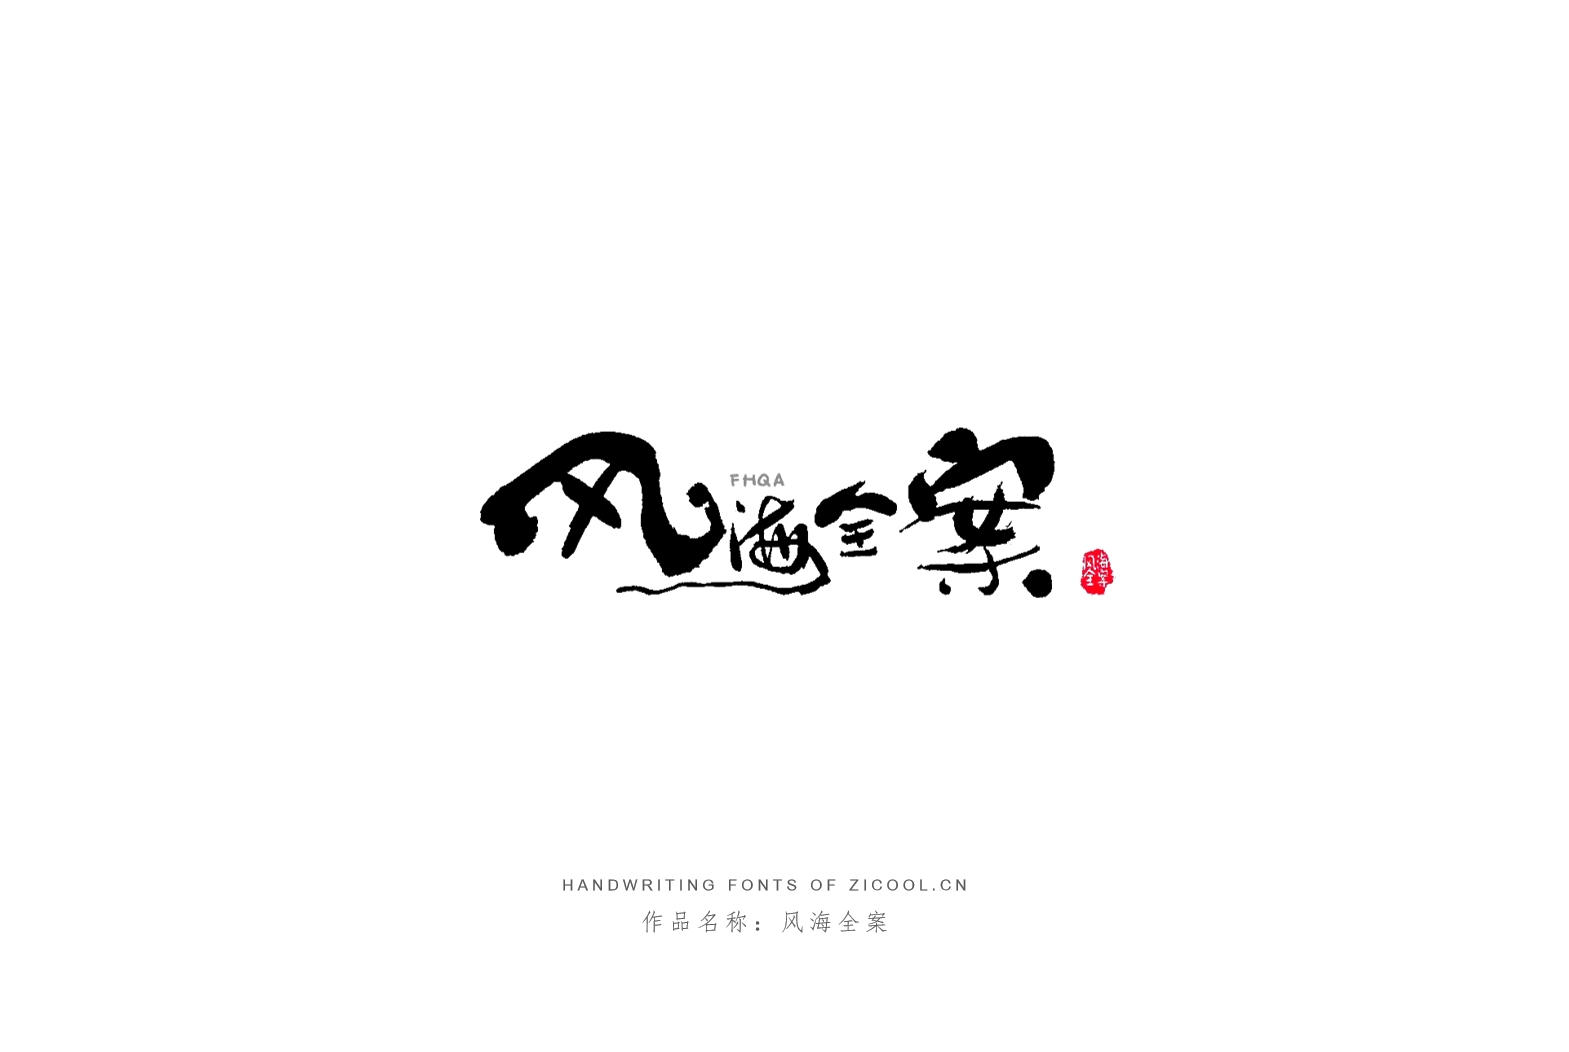 纯手写创意字体设计丨字酷zicool丨中国汉字本来就很酷